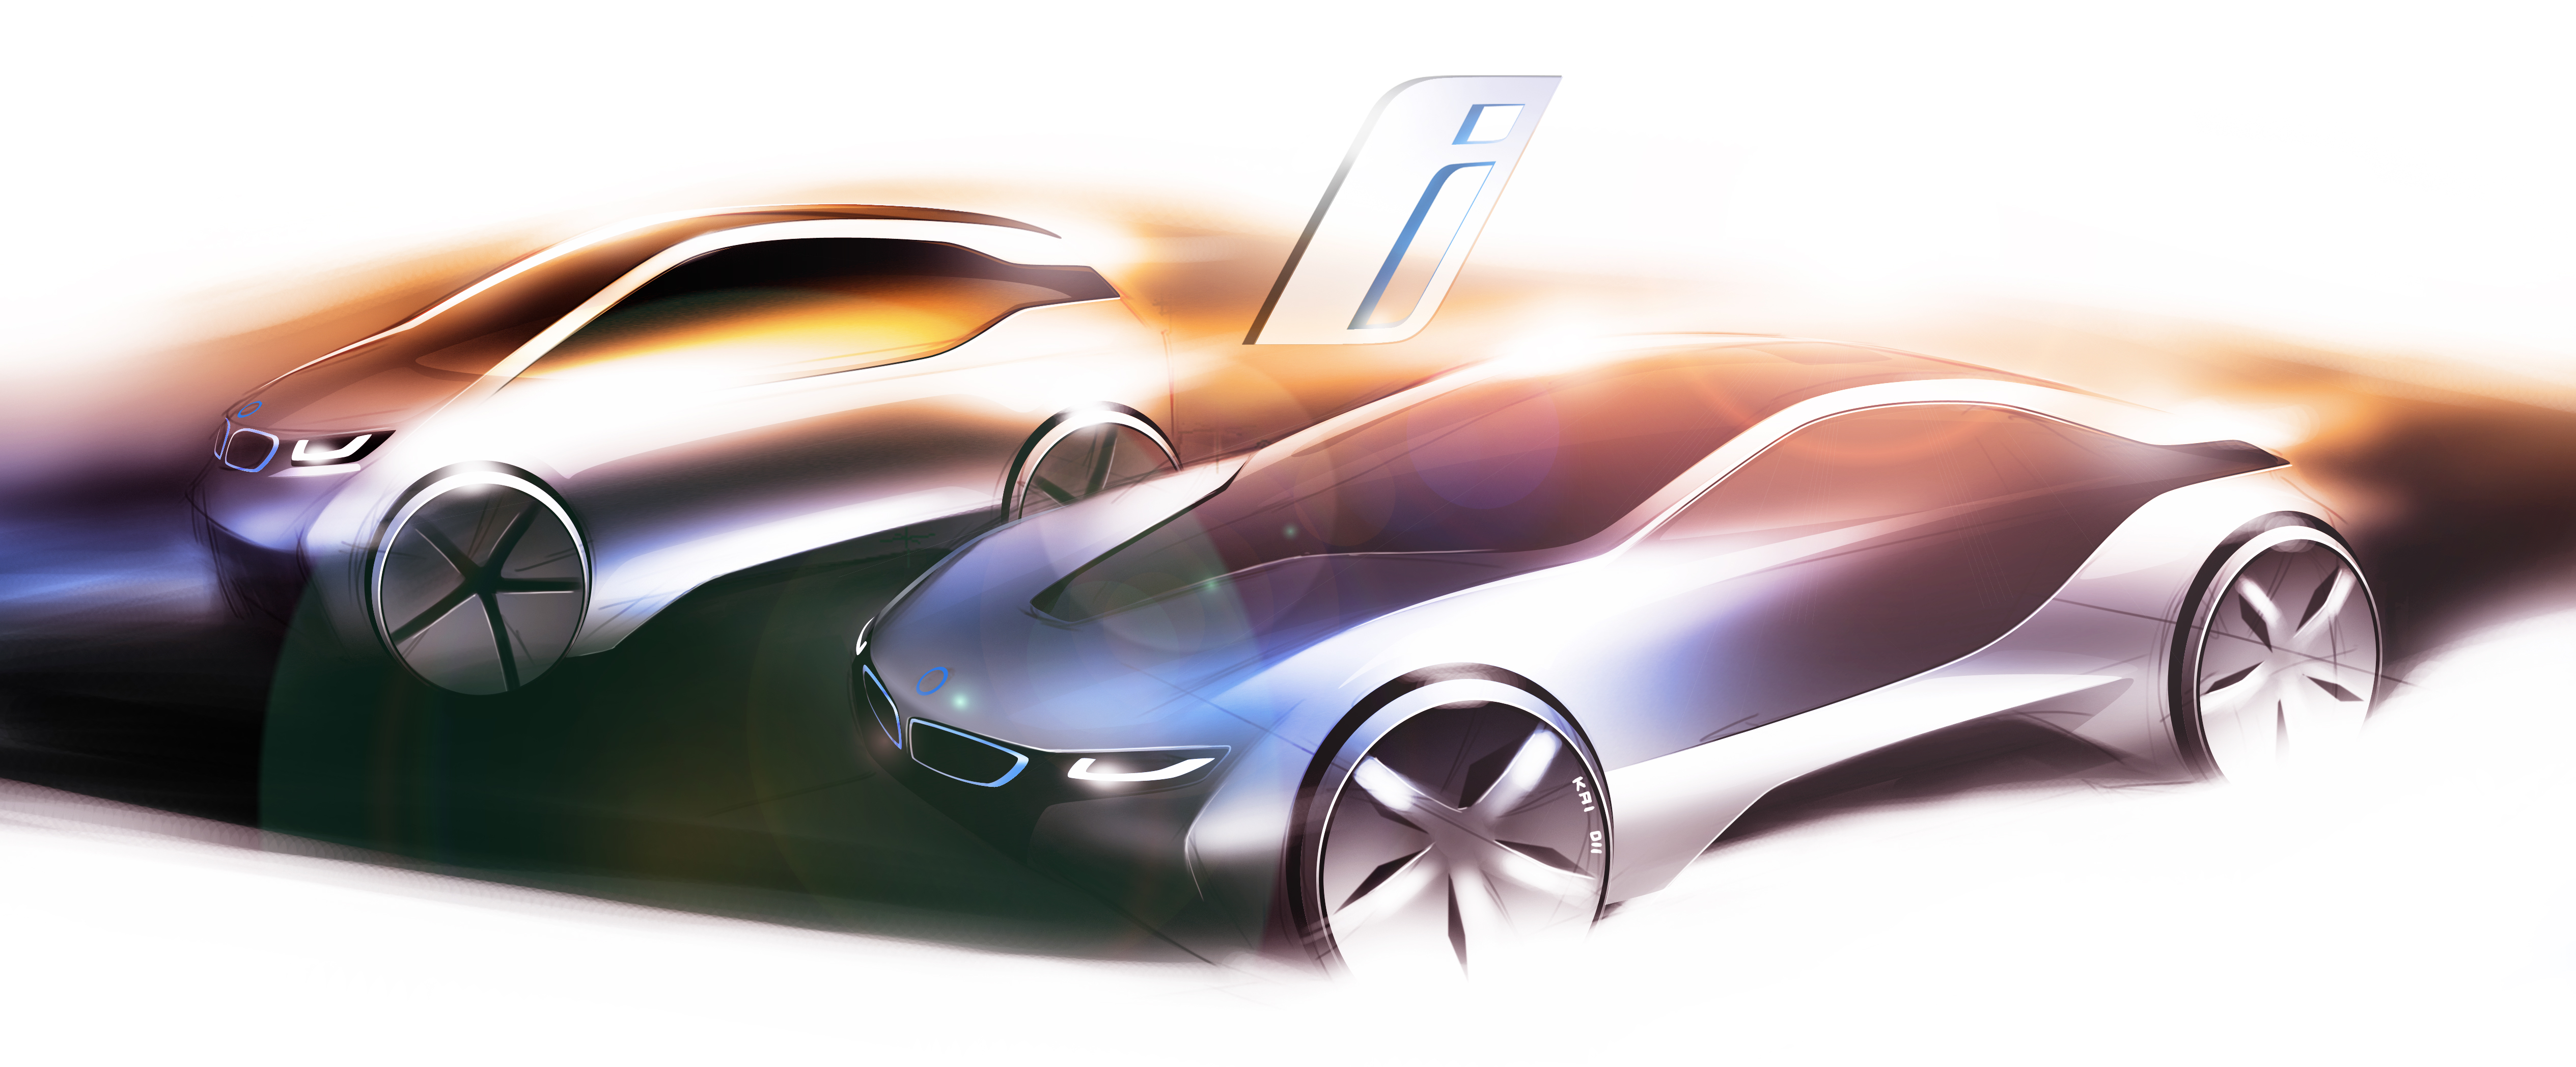 La mostra BMWi. Visionary mobility apre il 23 marzo Al Museo BMW di Monaco